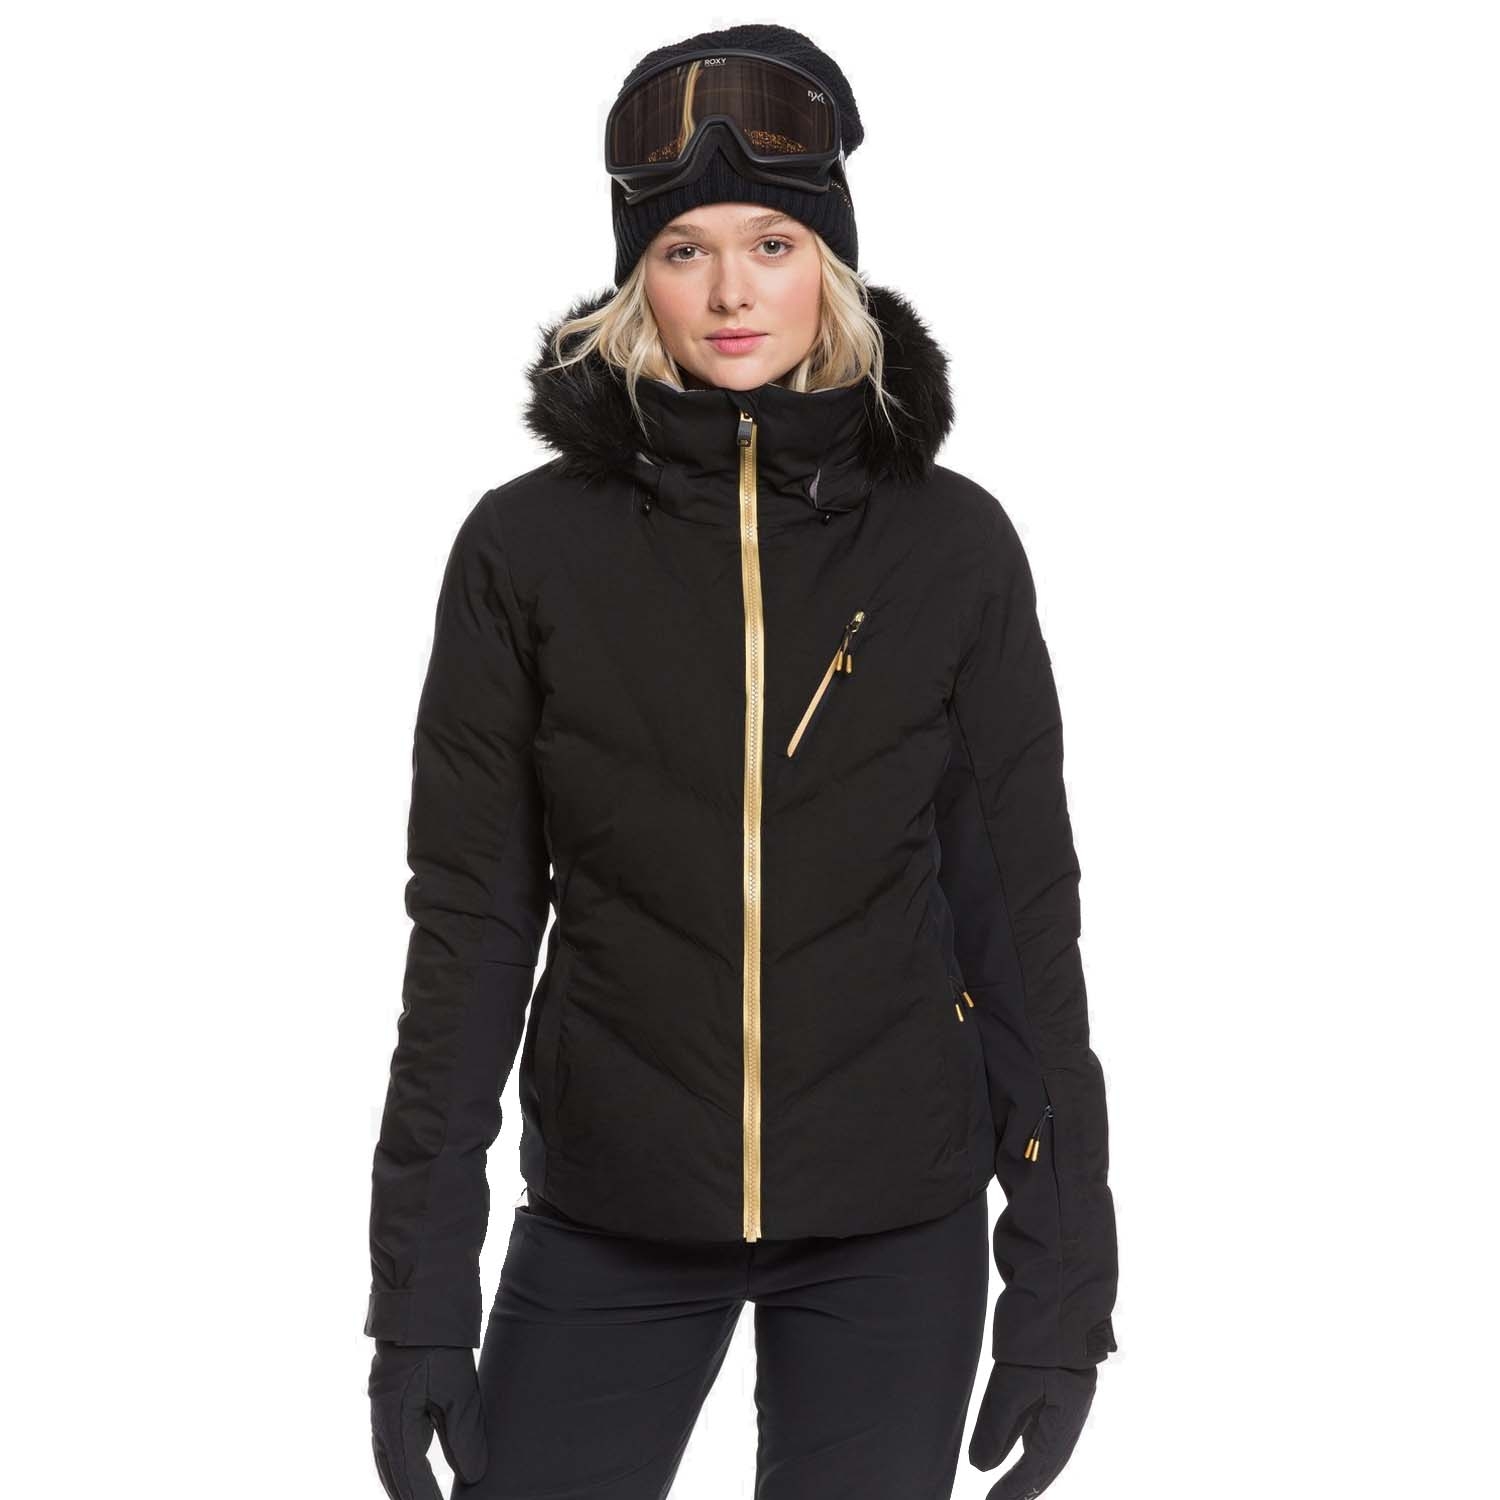 Roxy Snowstorm Plus Jacket 2020 | Roxy | Jackets | Snowtrax